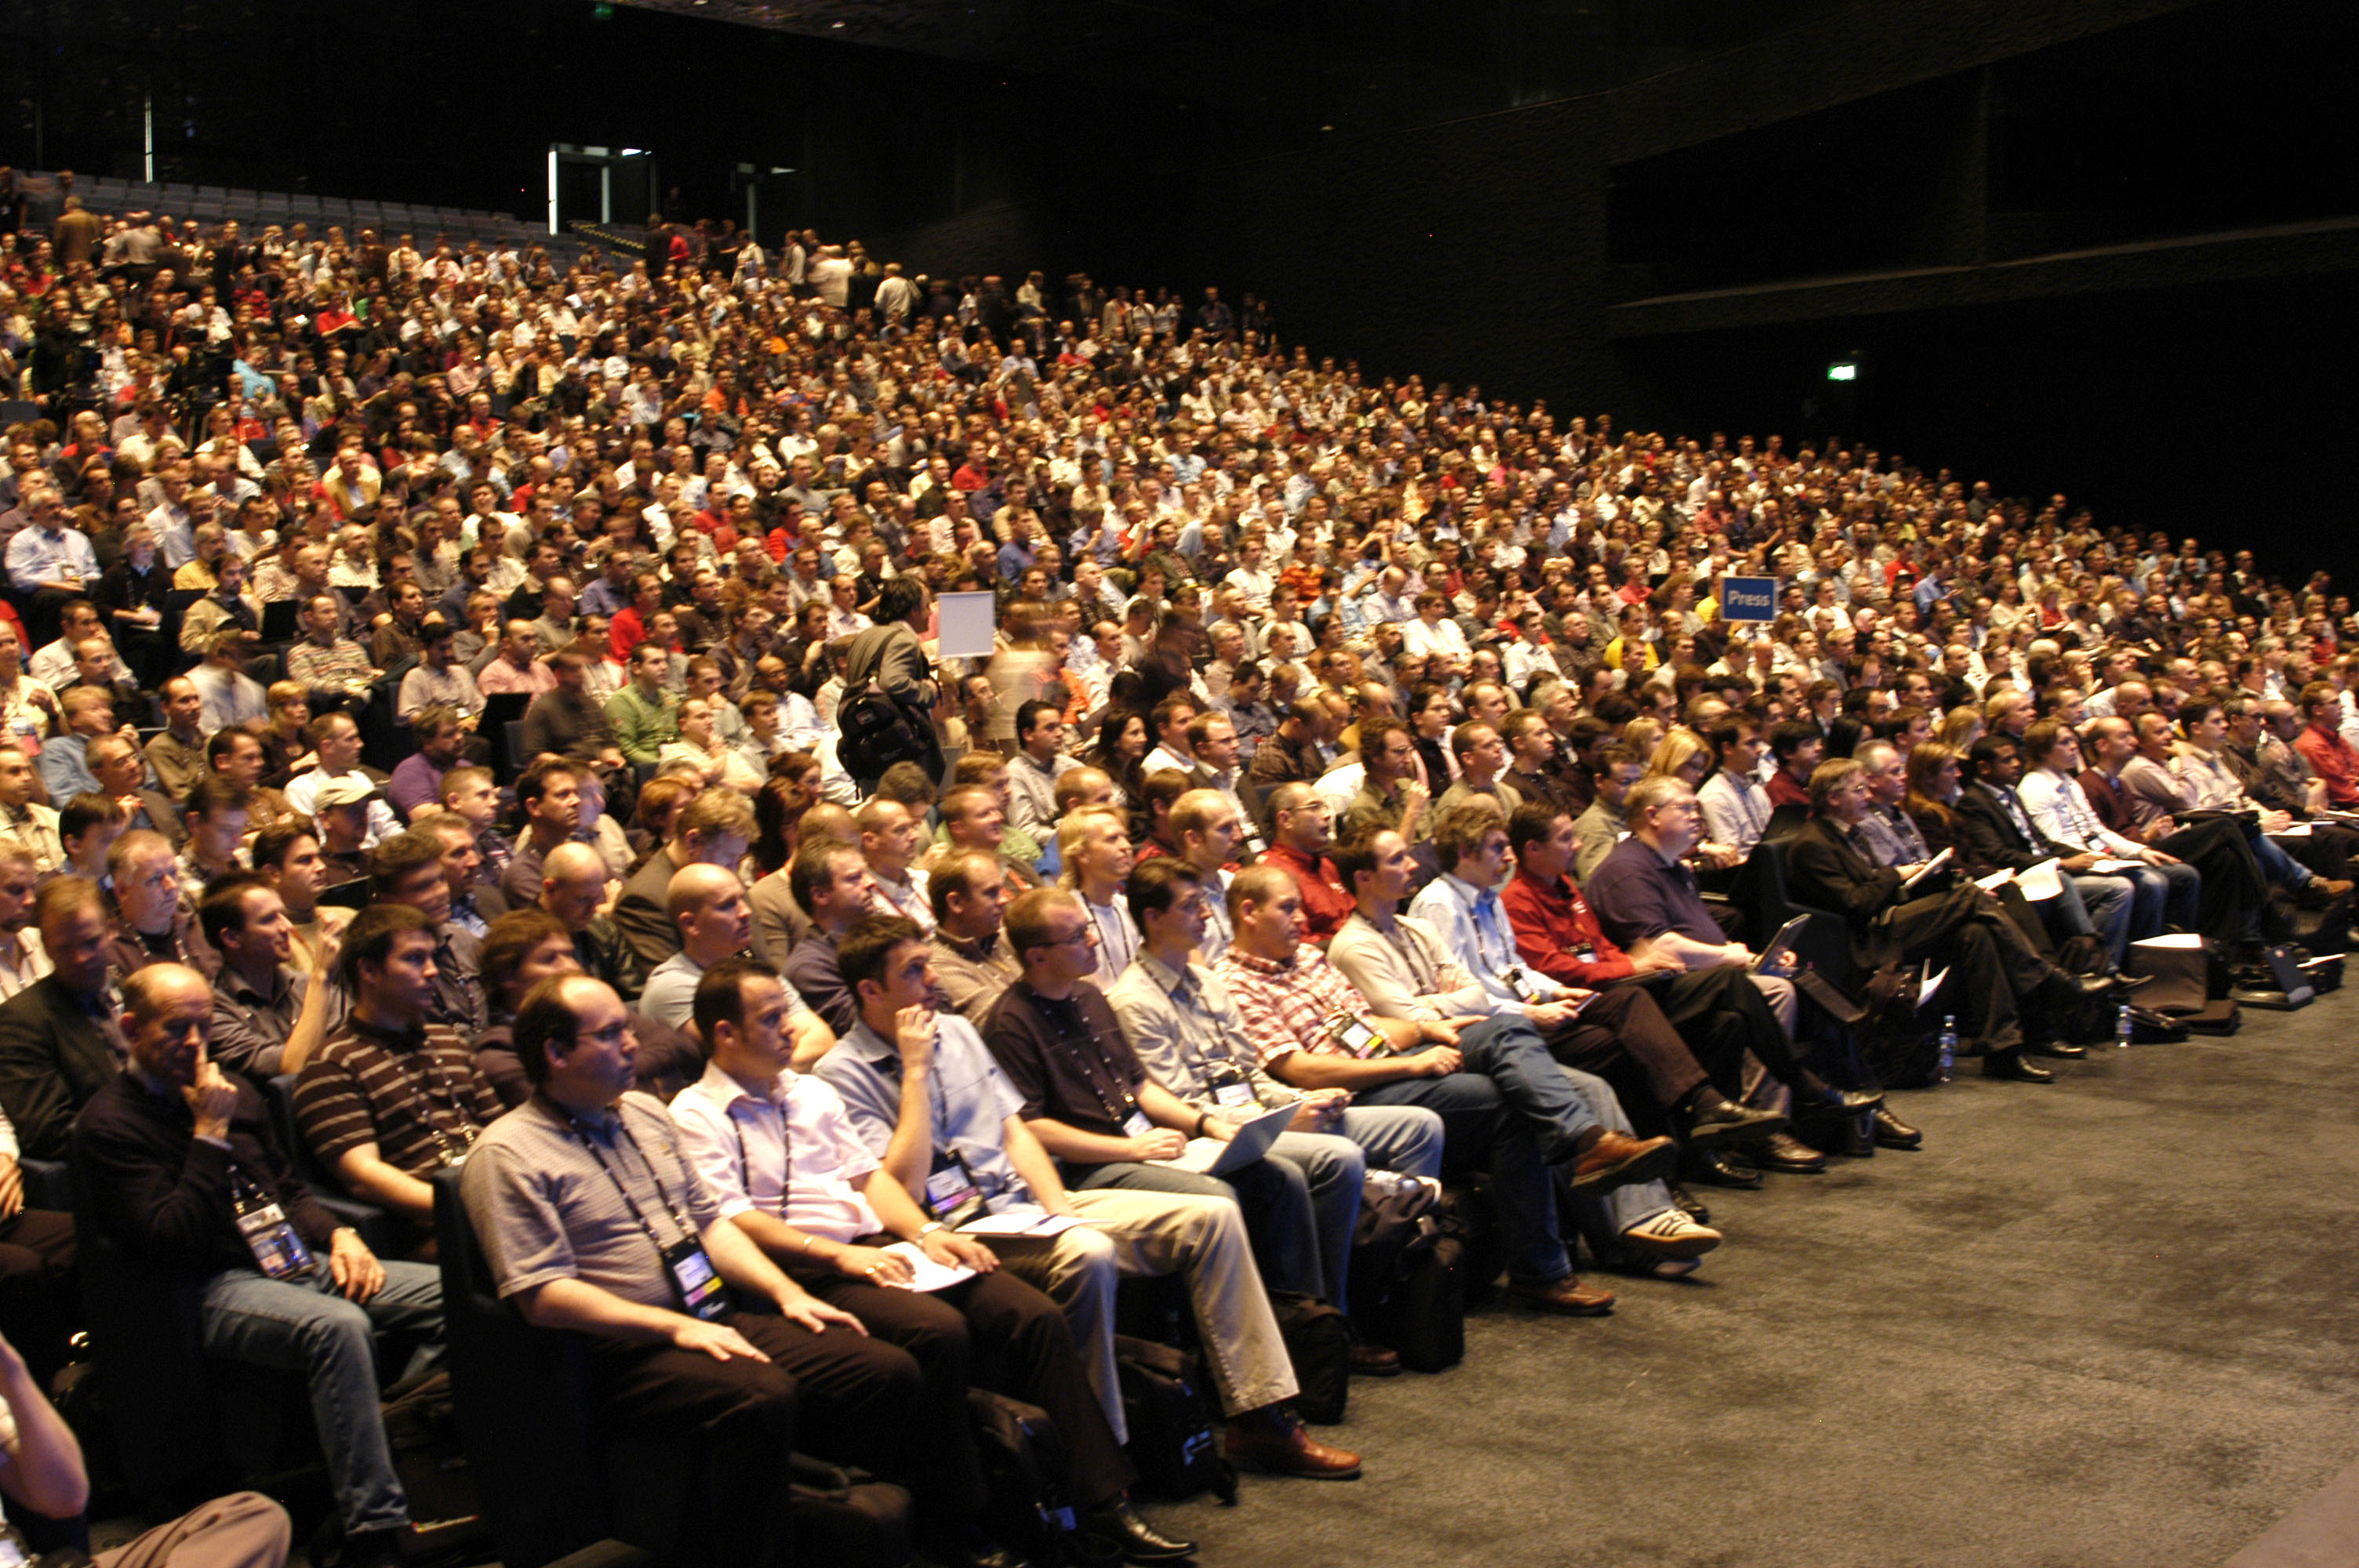 Возгласы зрителей. Полный зал людей. Много людей в зале. Большая аудитория людей. Зрительный зал с людьми.